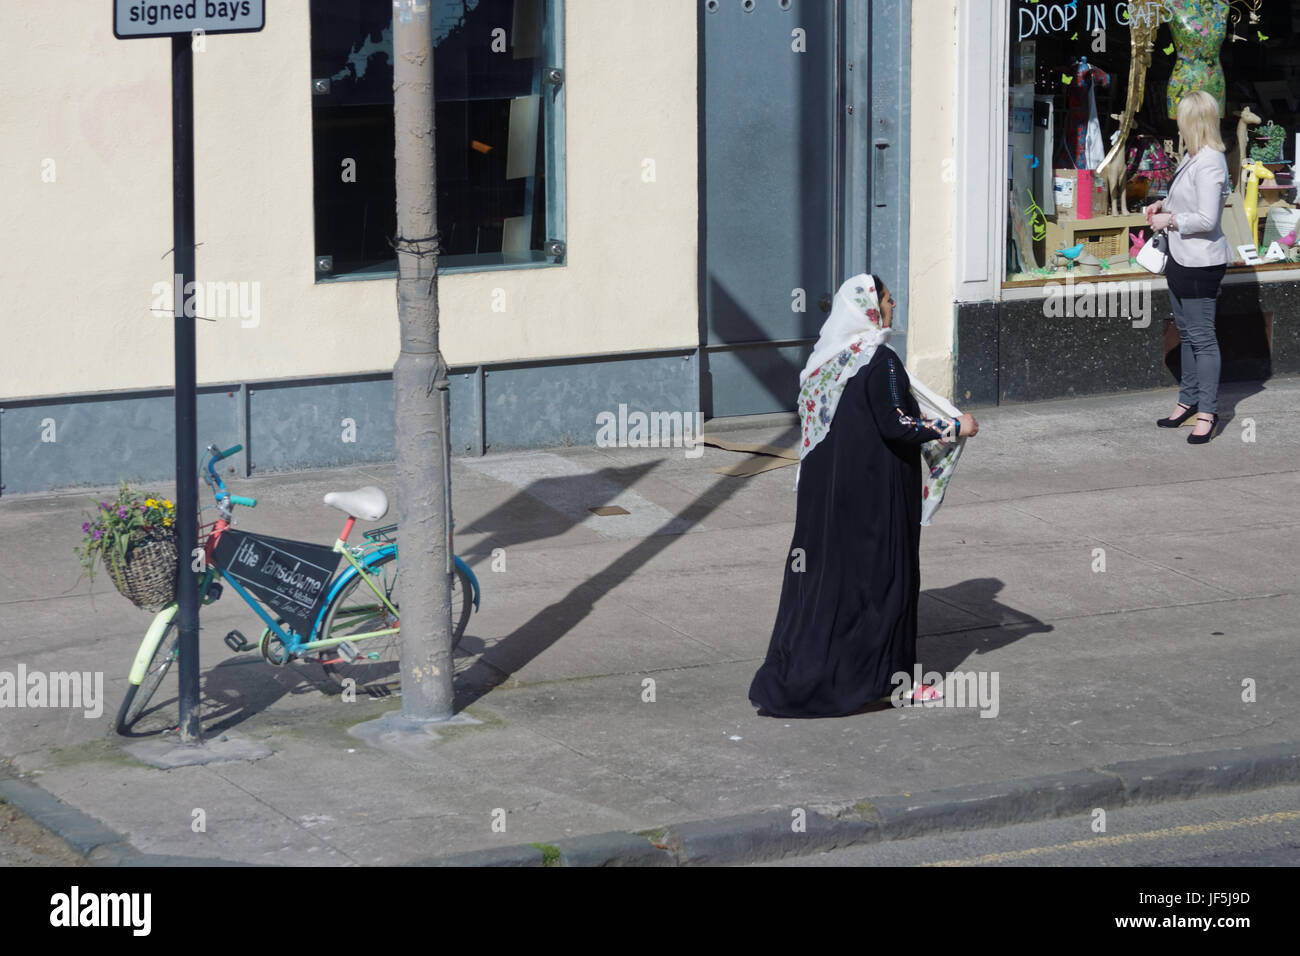 Asiatische Familie Flüchtling gekleidet Hijab Schal auf Straße in der UK alltägliche Szene Frau einkaufen Stockfoto